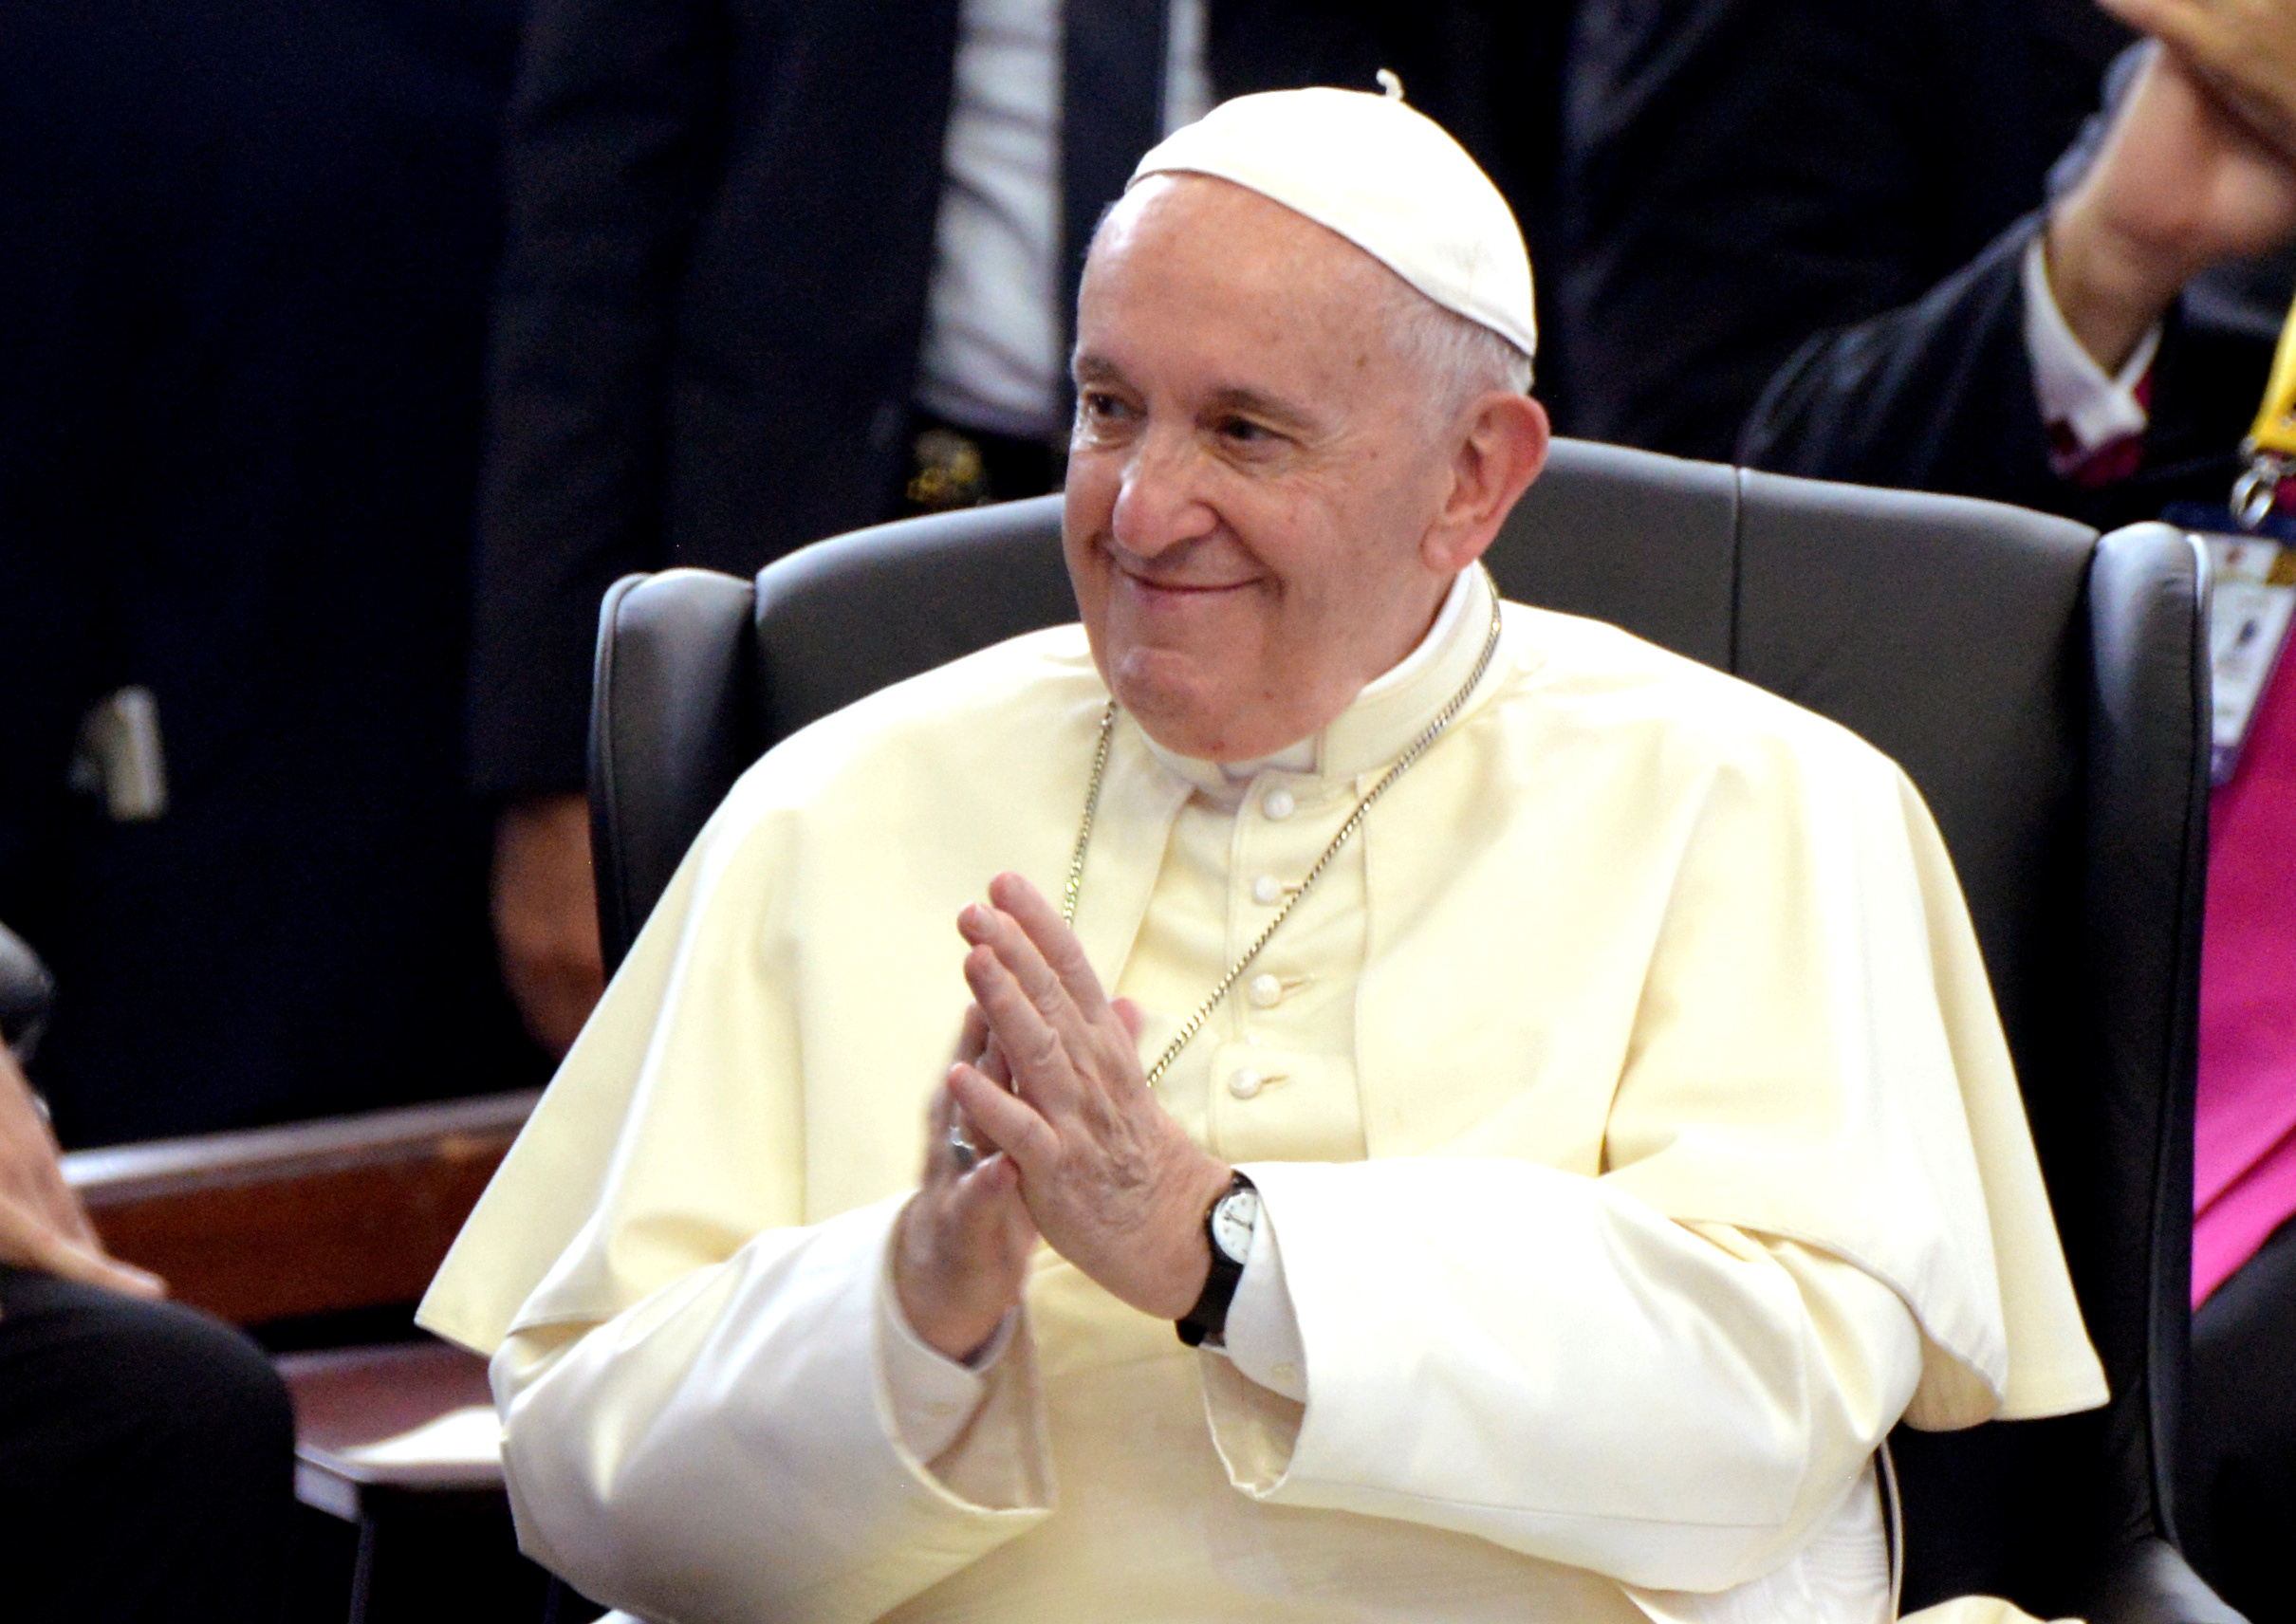 La cuenta de Instagram del papa Francisco le dio un “like” a la foto de una “colegial” picante con tremendas nalgas